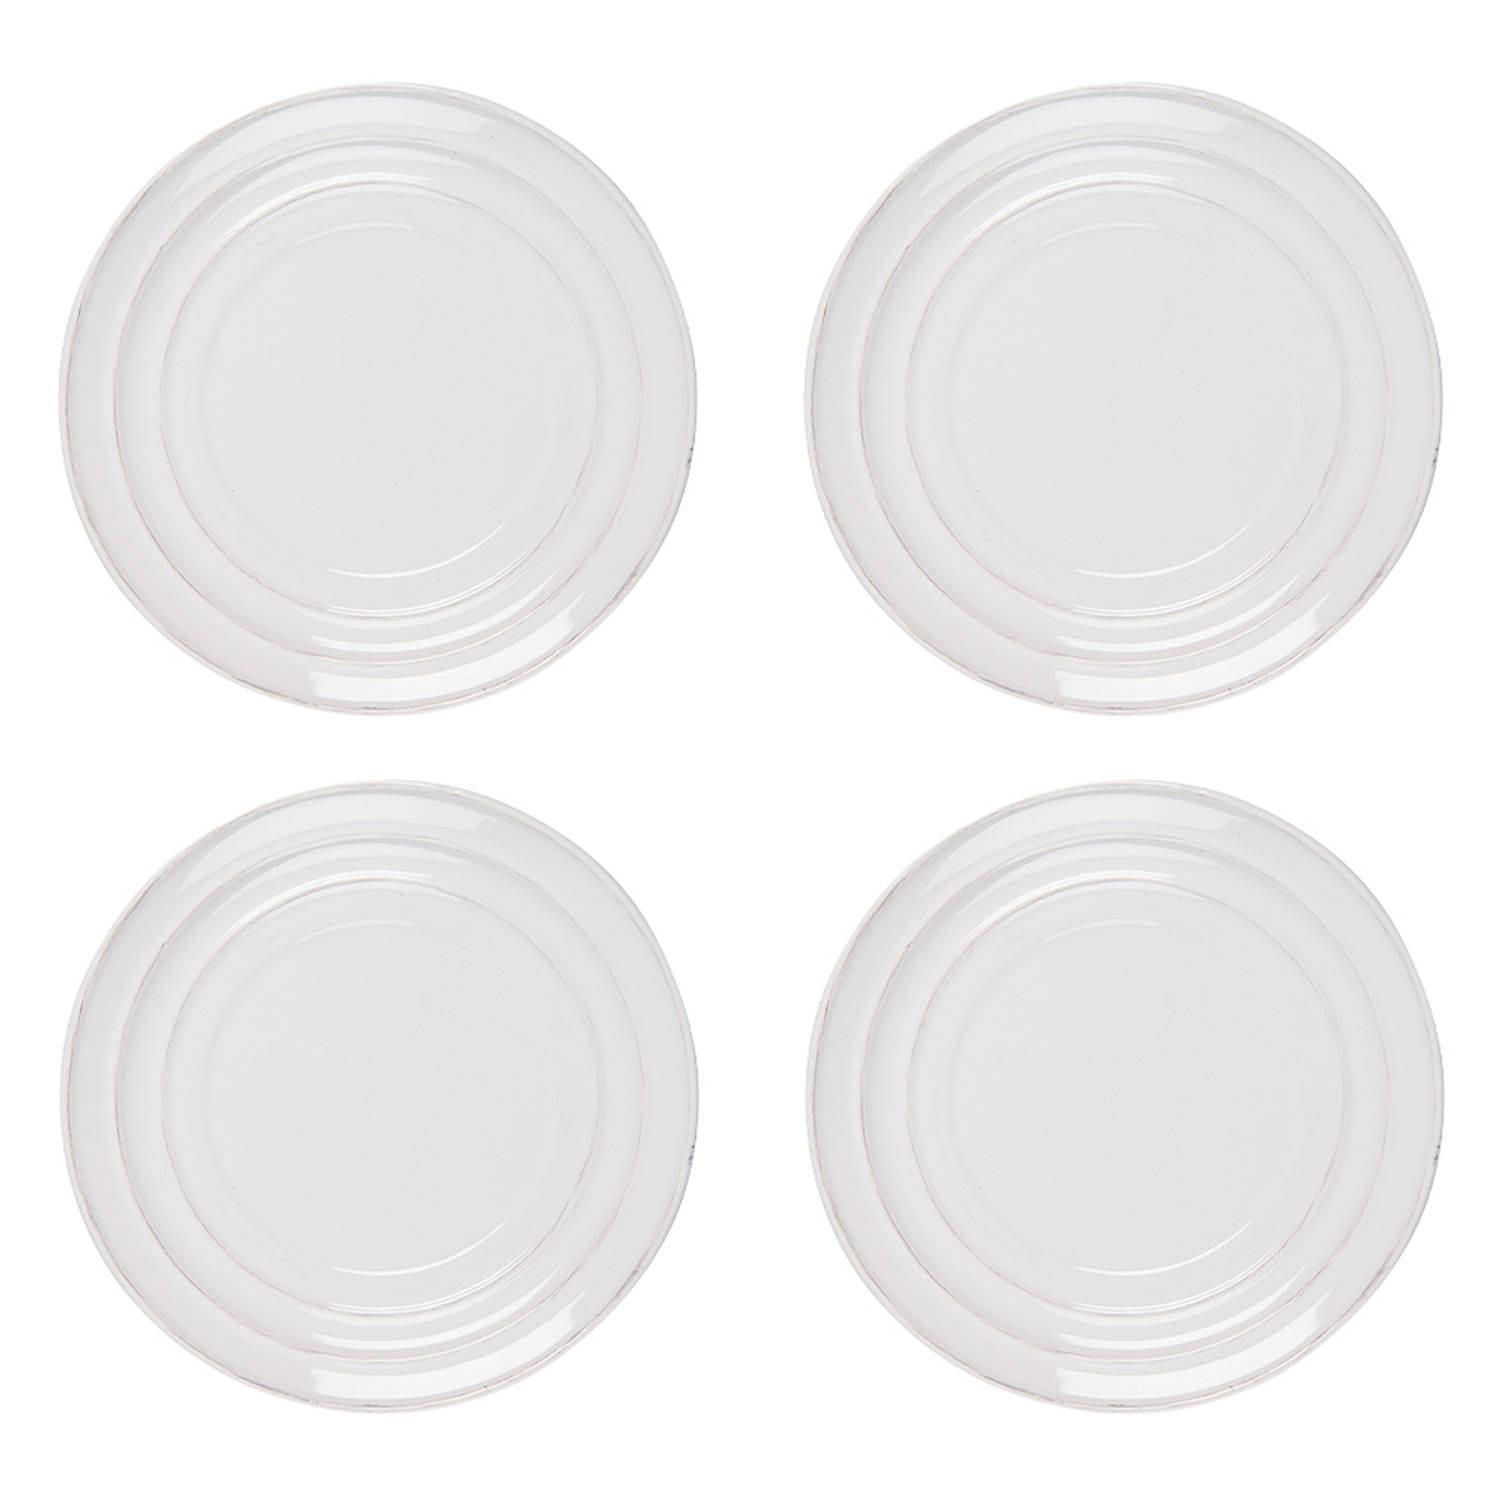 HAES DECO - Ontbijtborden set van 4 - Formaat Ø 22x2 cm - kleuren Wit - Bedrukt Aardewerk - Collectie: Ribble - Servies, kleine borden